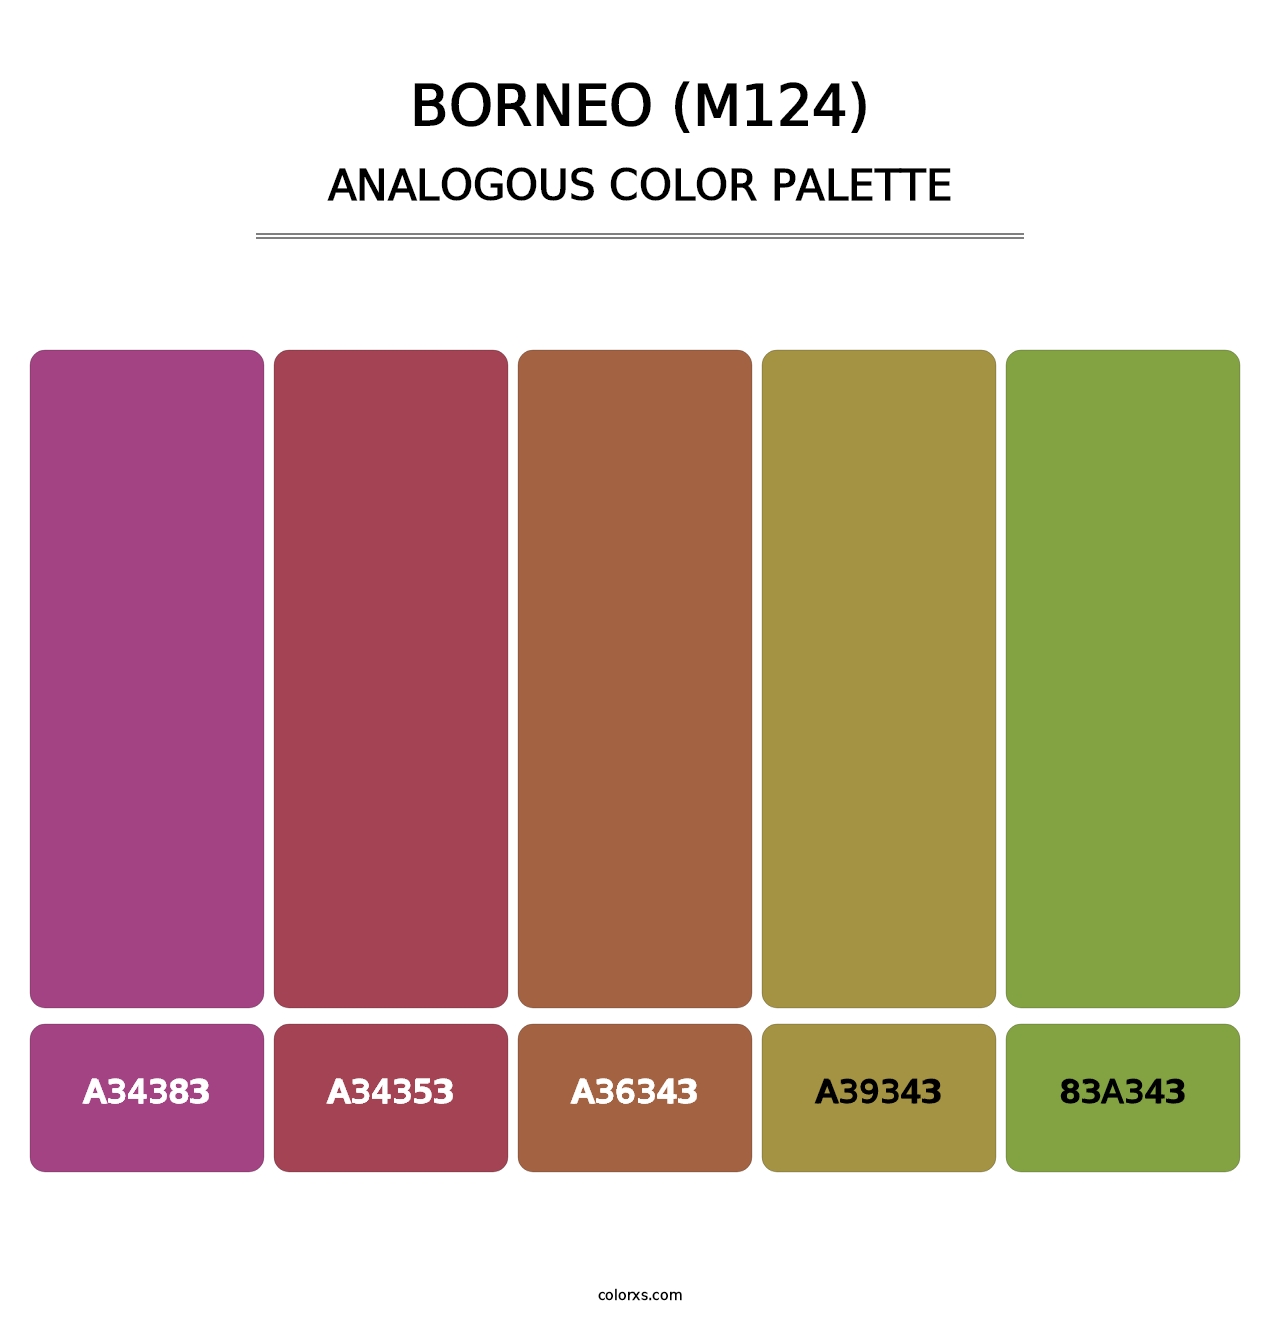 Borneo (M124) - Analogous Color Palette